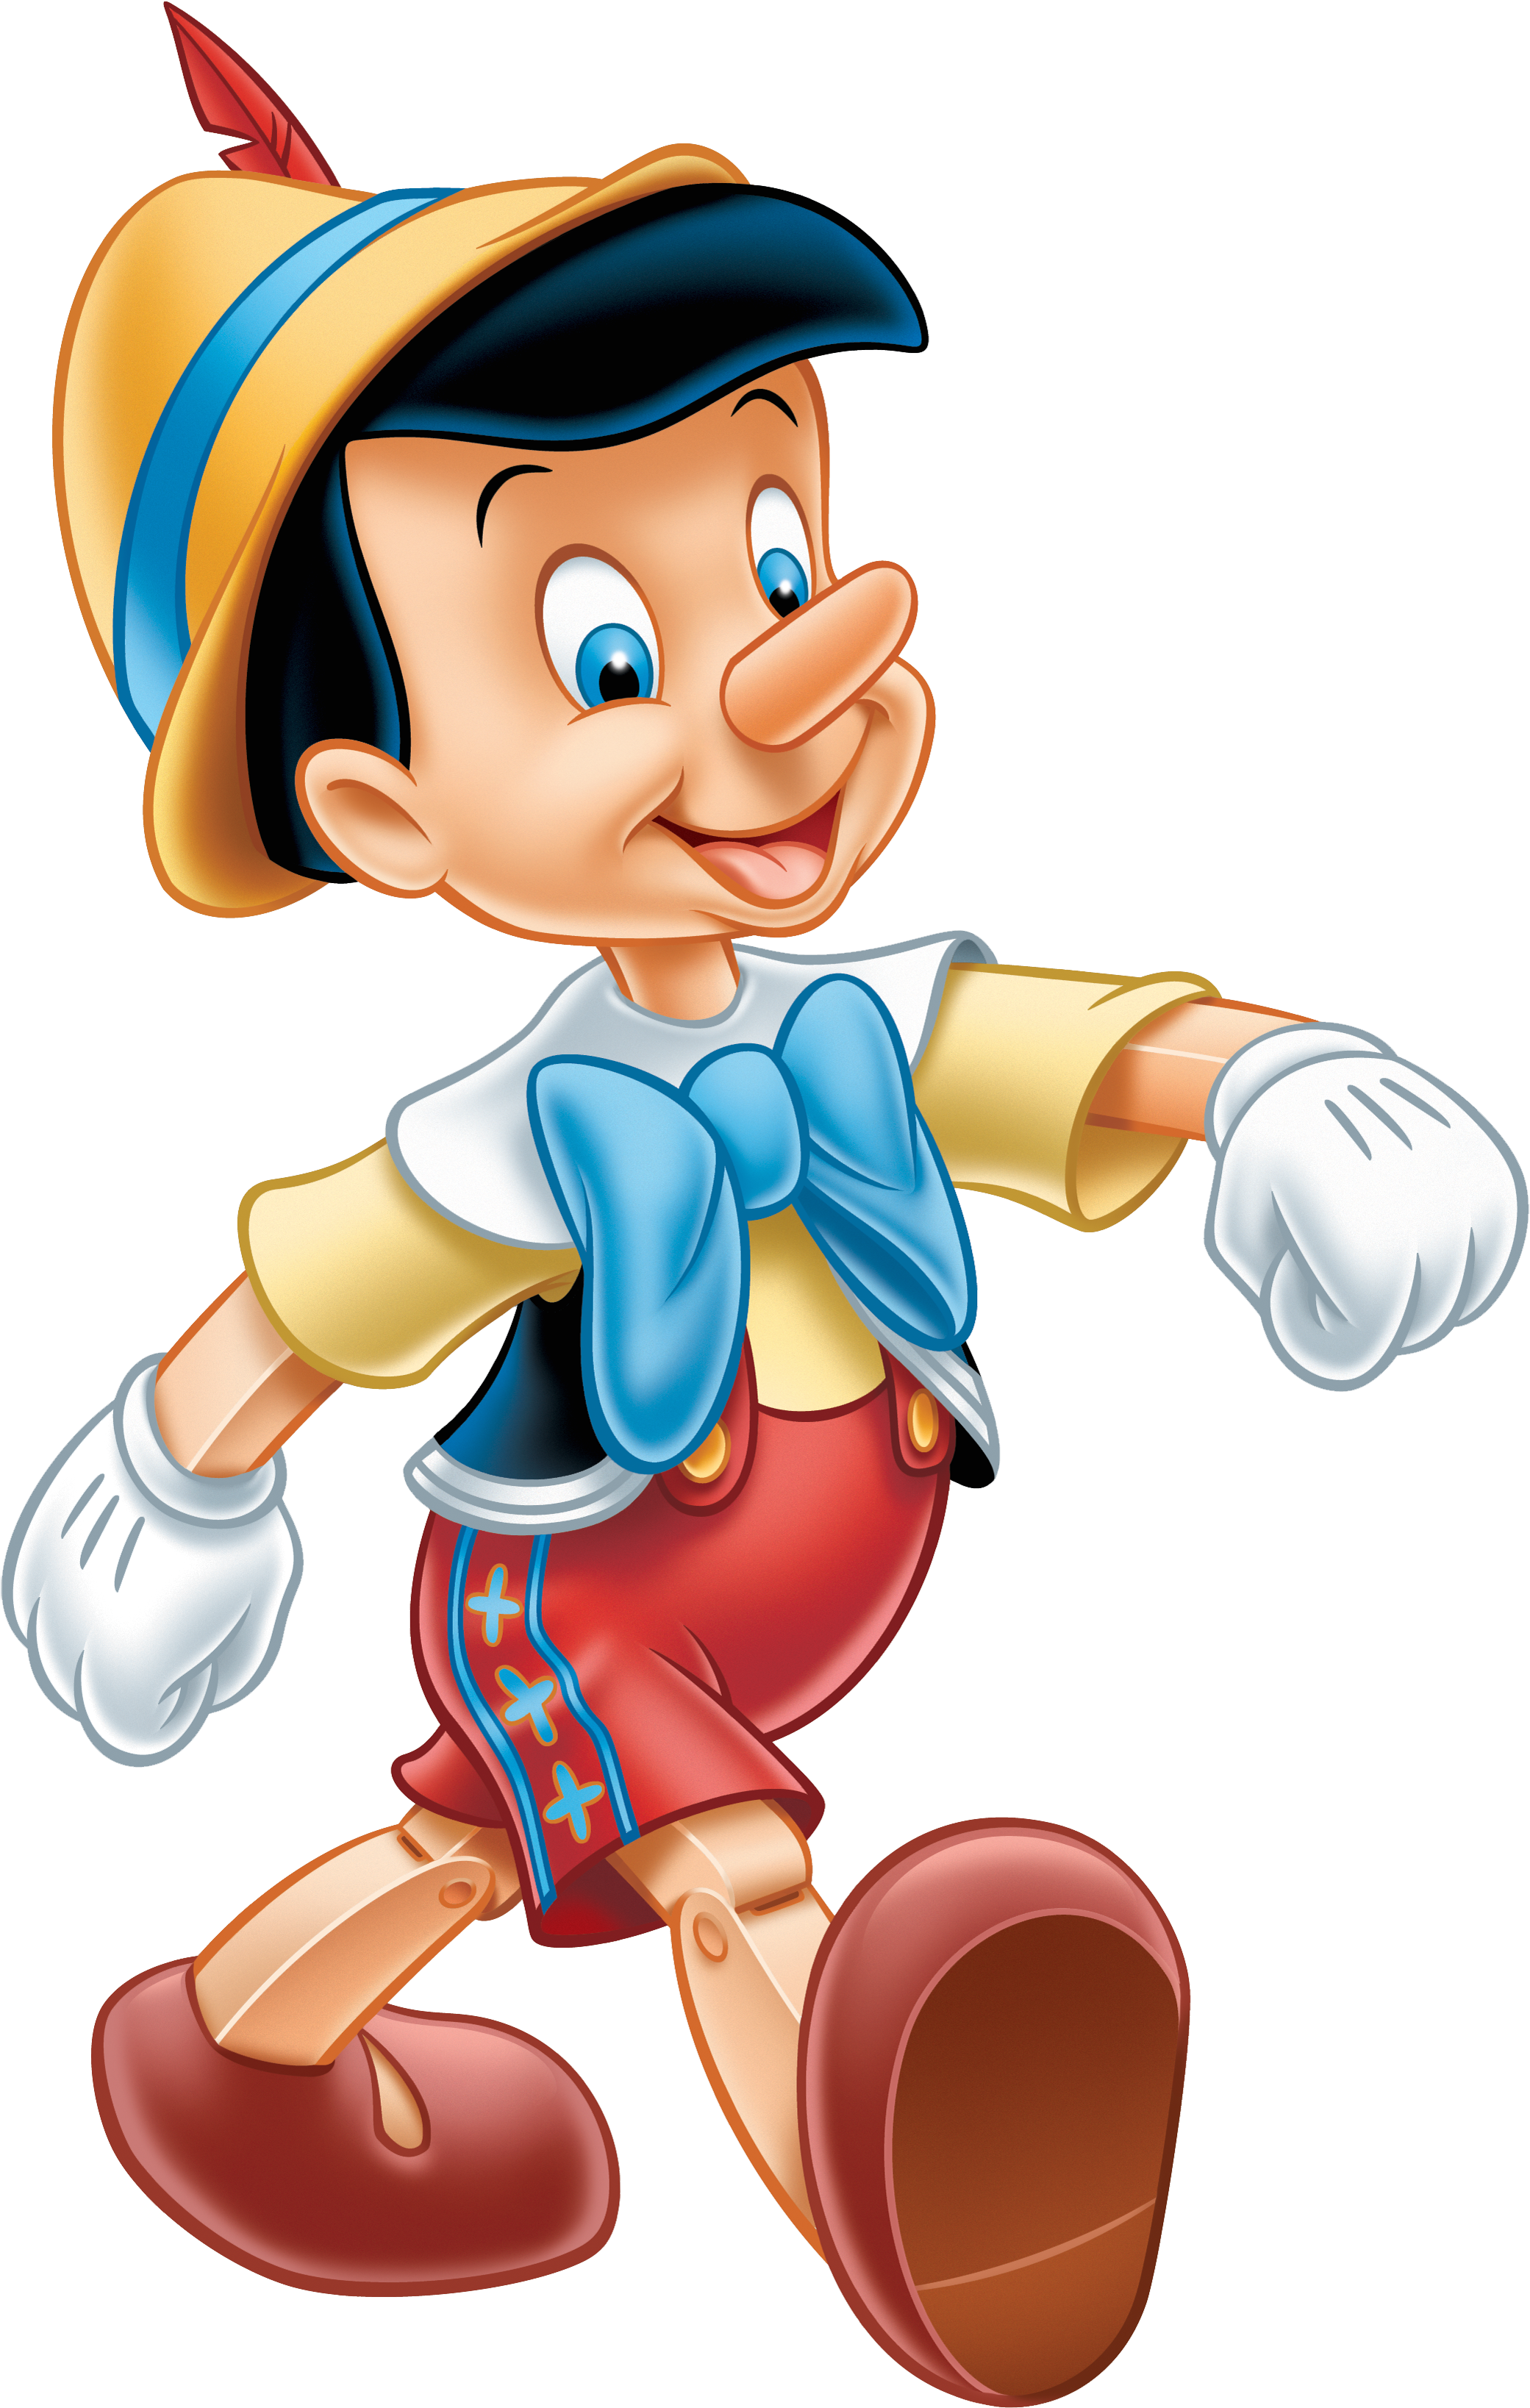 Pinocchio Clip Art - Pinocchio Fairy Tale.